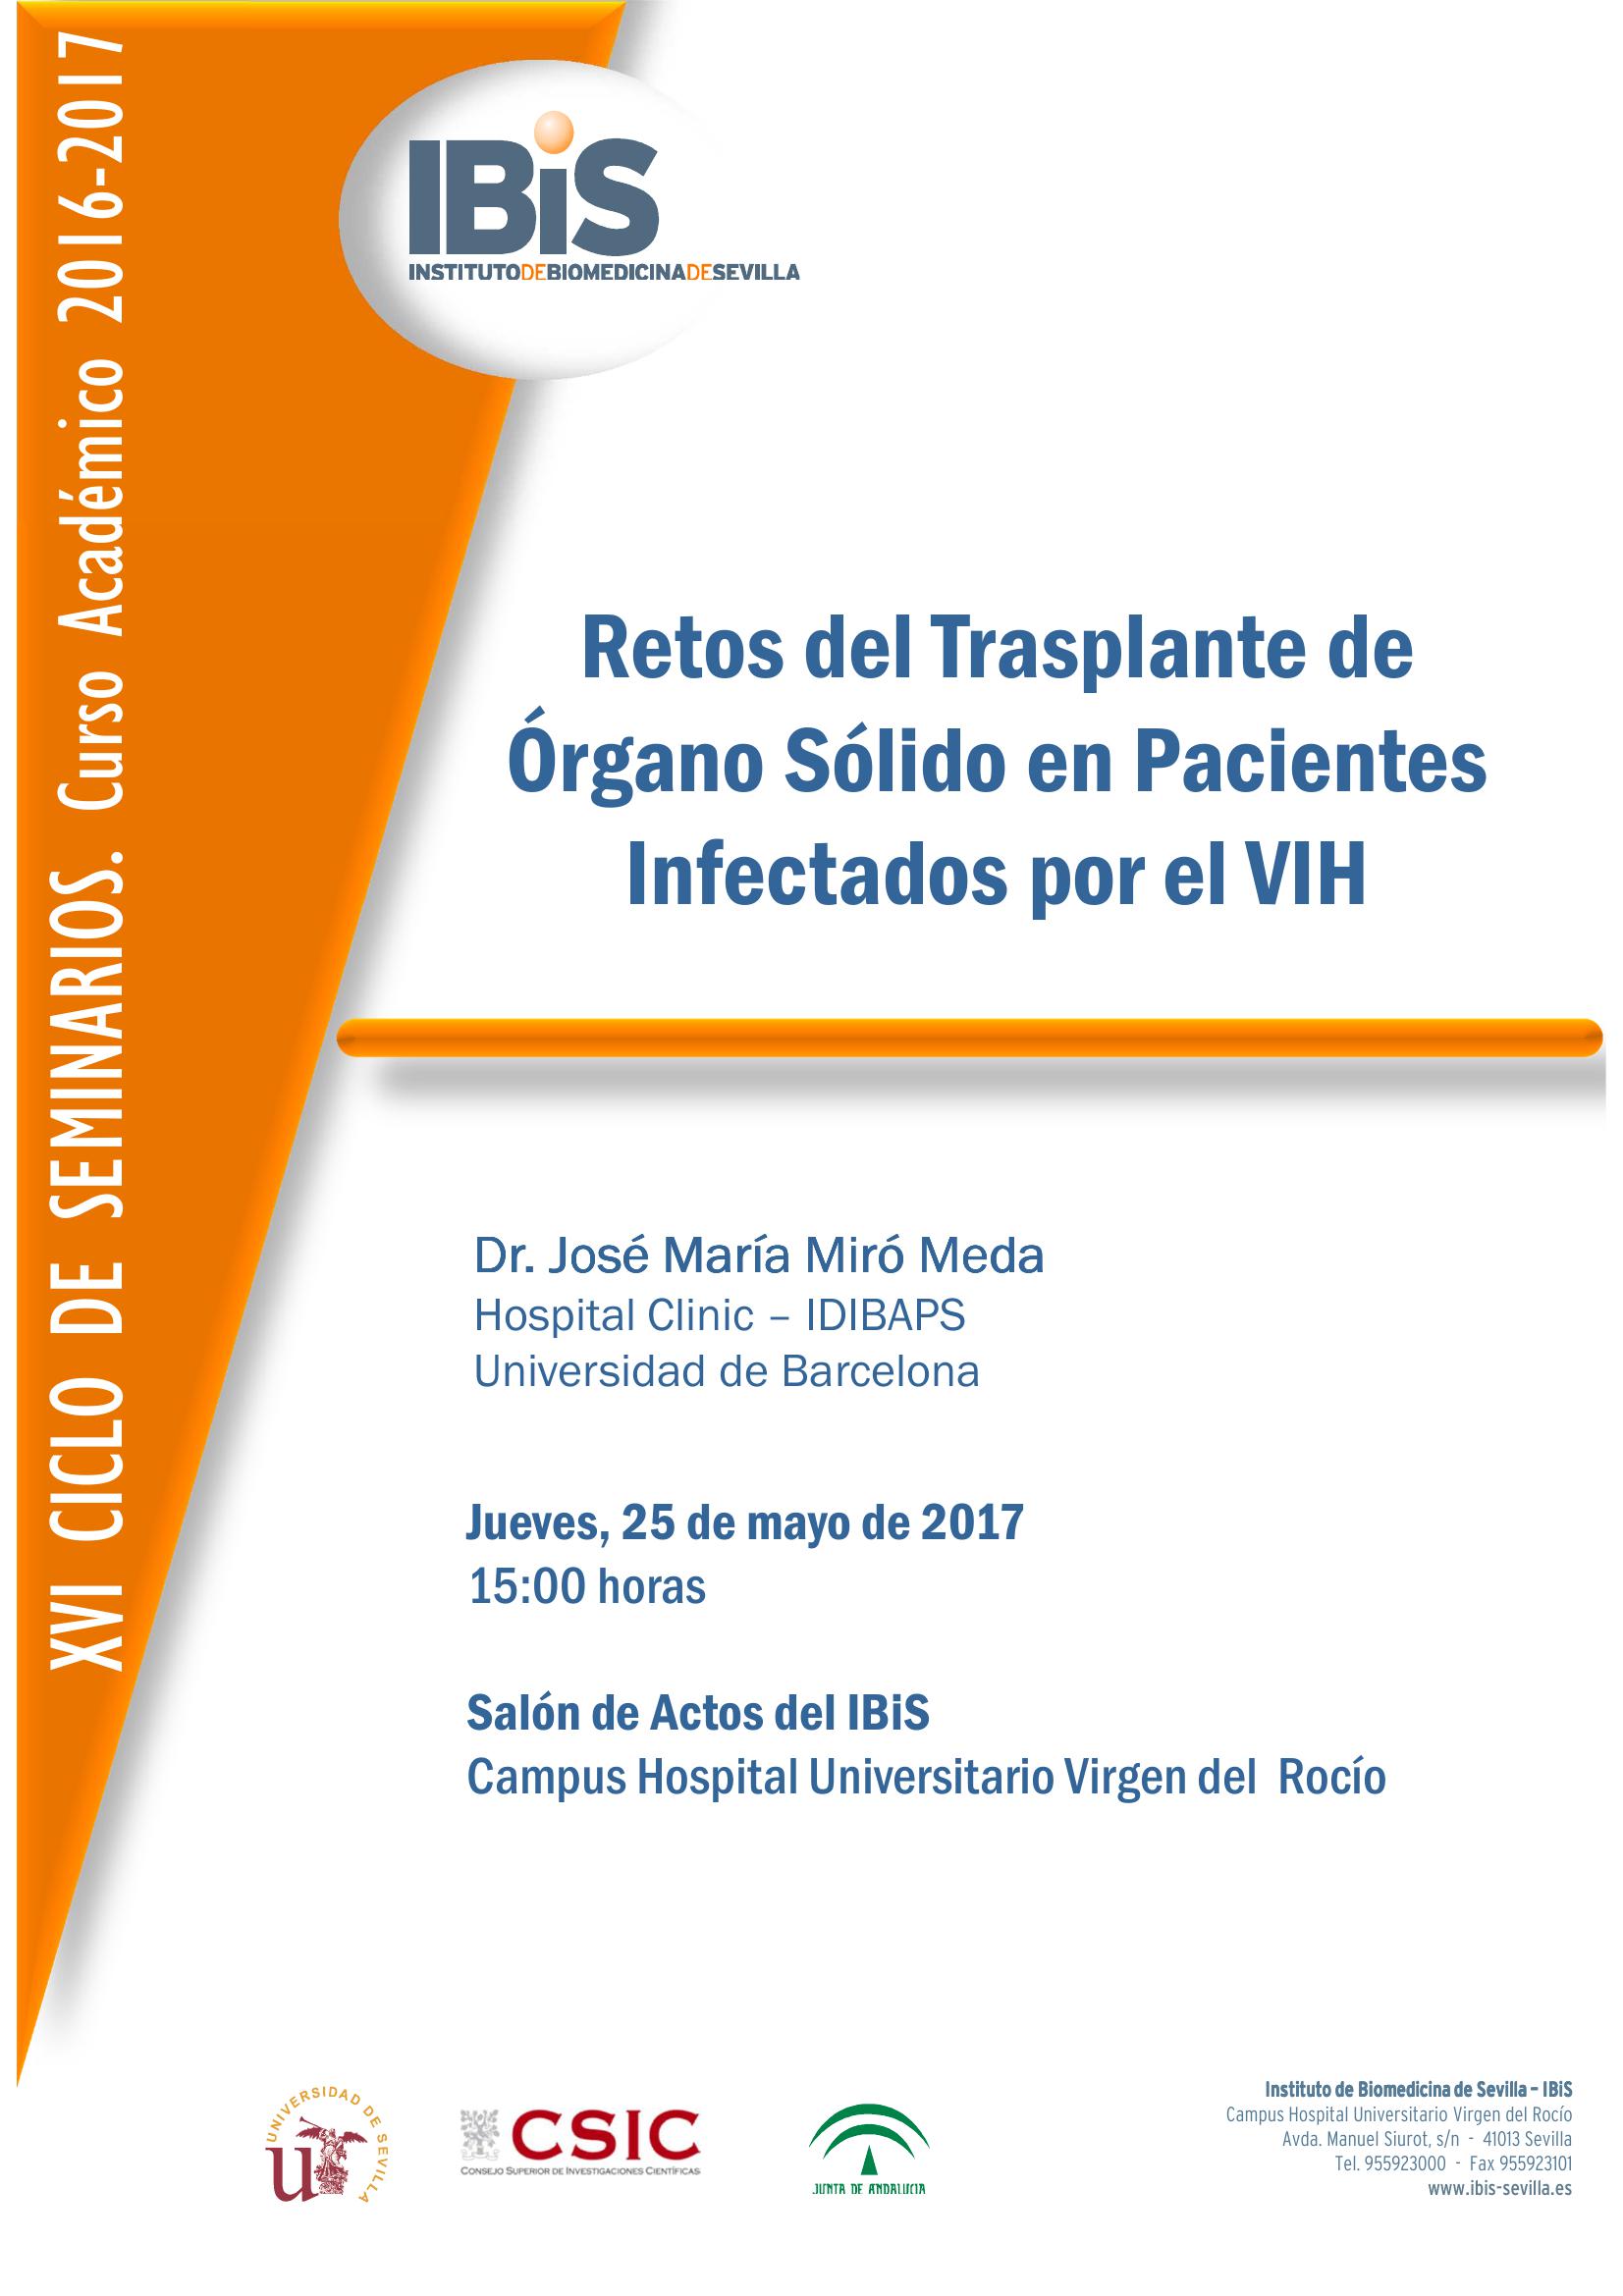 Poster: Retos del Trasplante de Órgano Sólido en Pacientes Infectados por el VIH